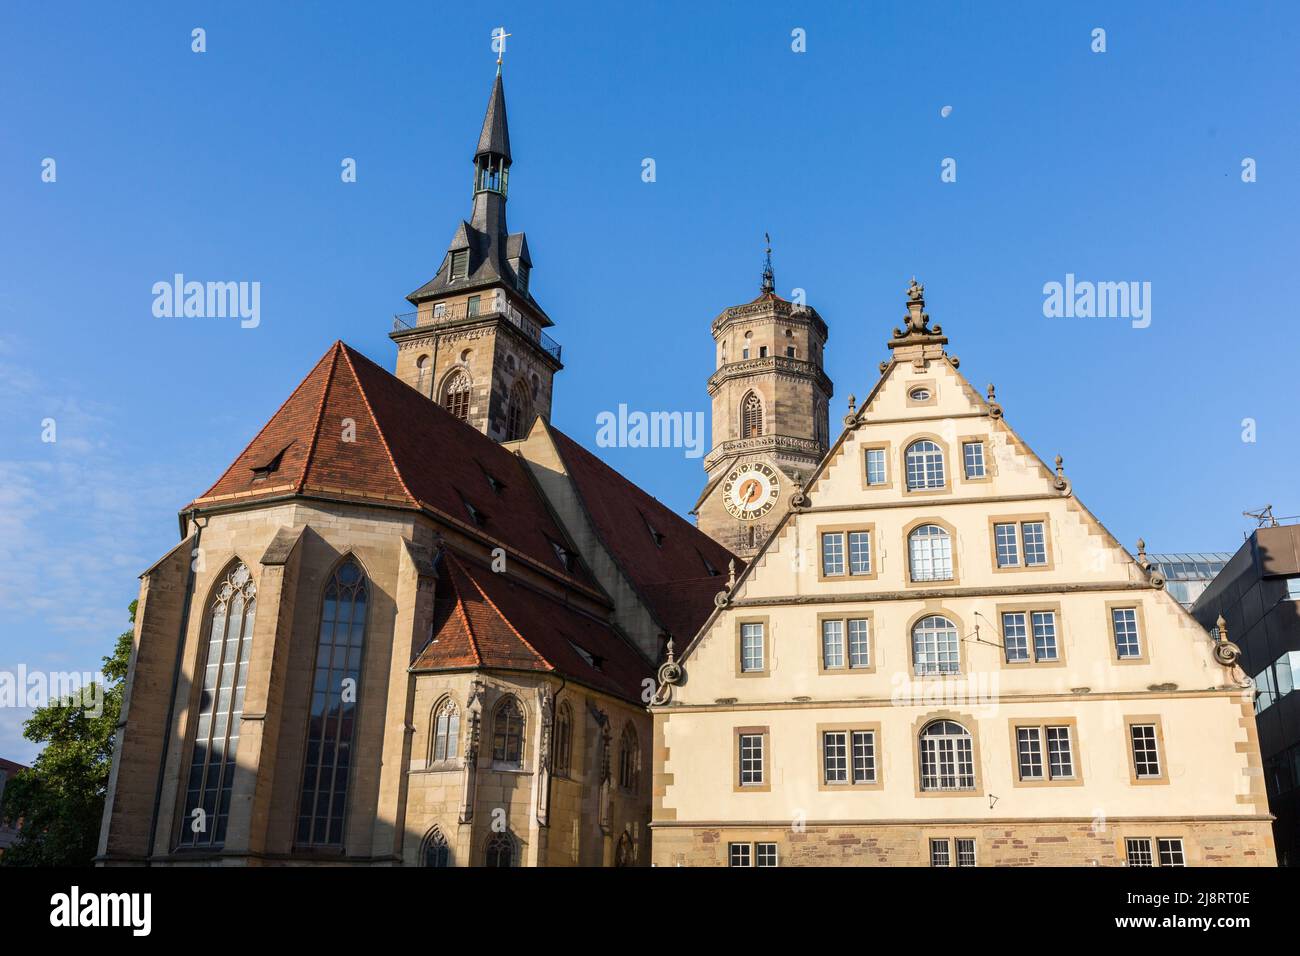 Stoccarda, Germania - 29 luglio 2021: Stiftskirche (a sinistra, chiesa collegiata) e Prinzenbau, situato in piazza Schiller di Stoccarda. Foto Stock